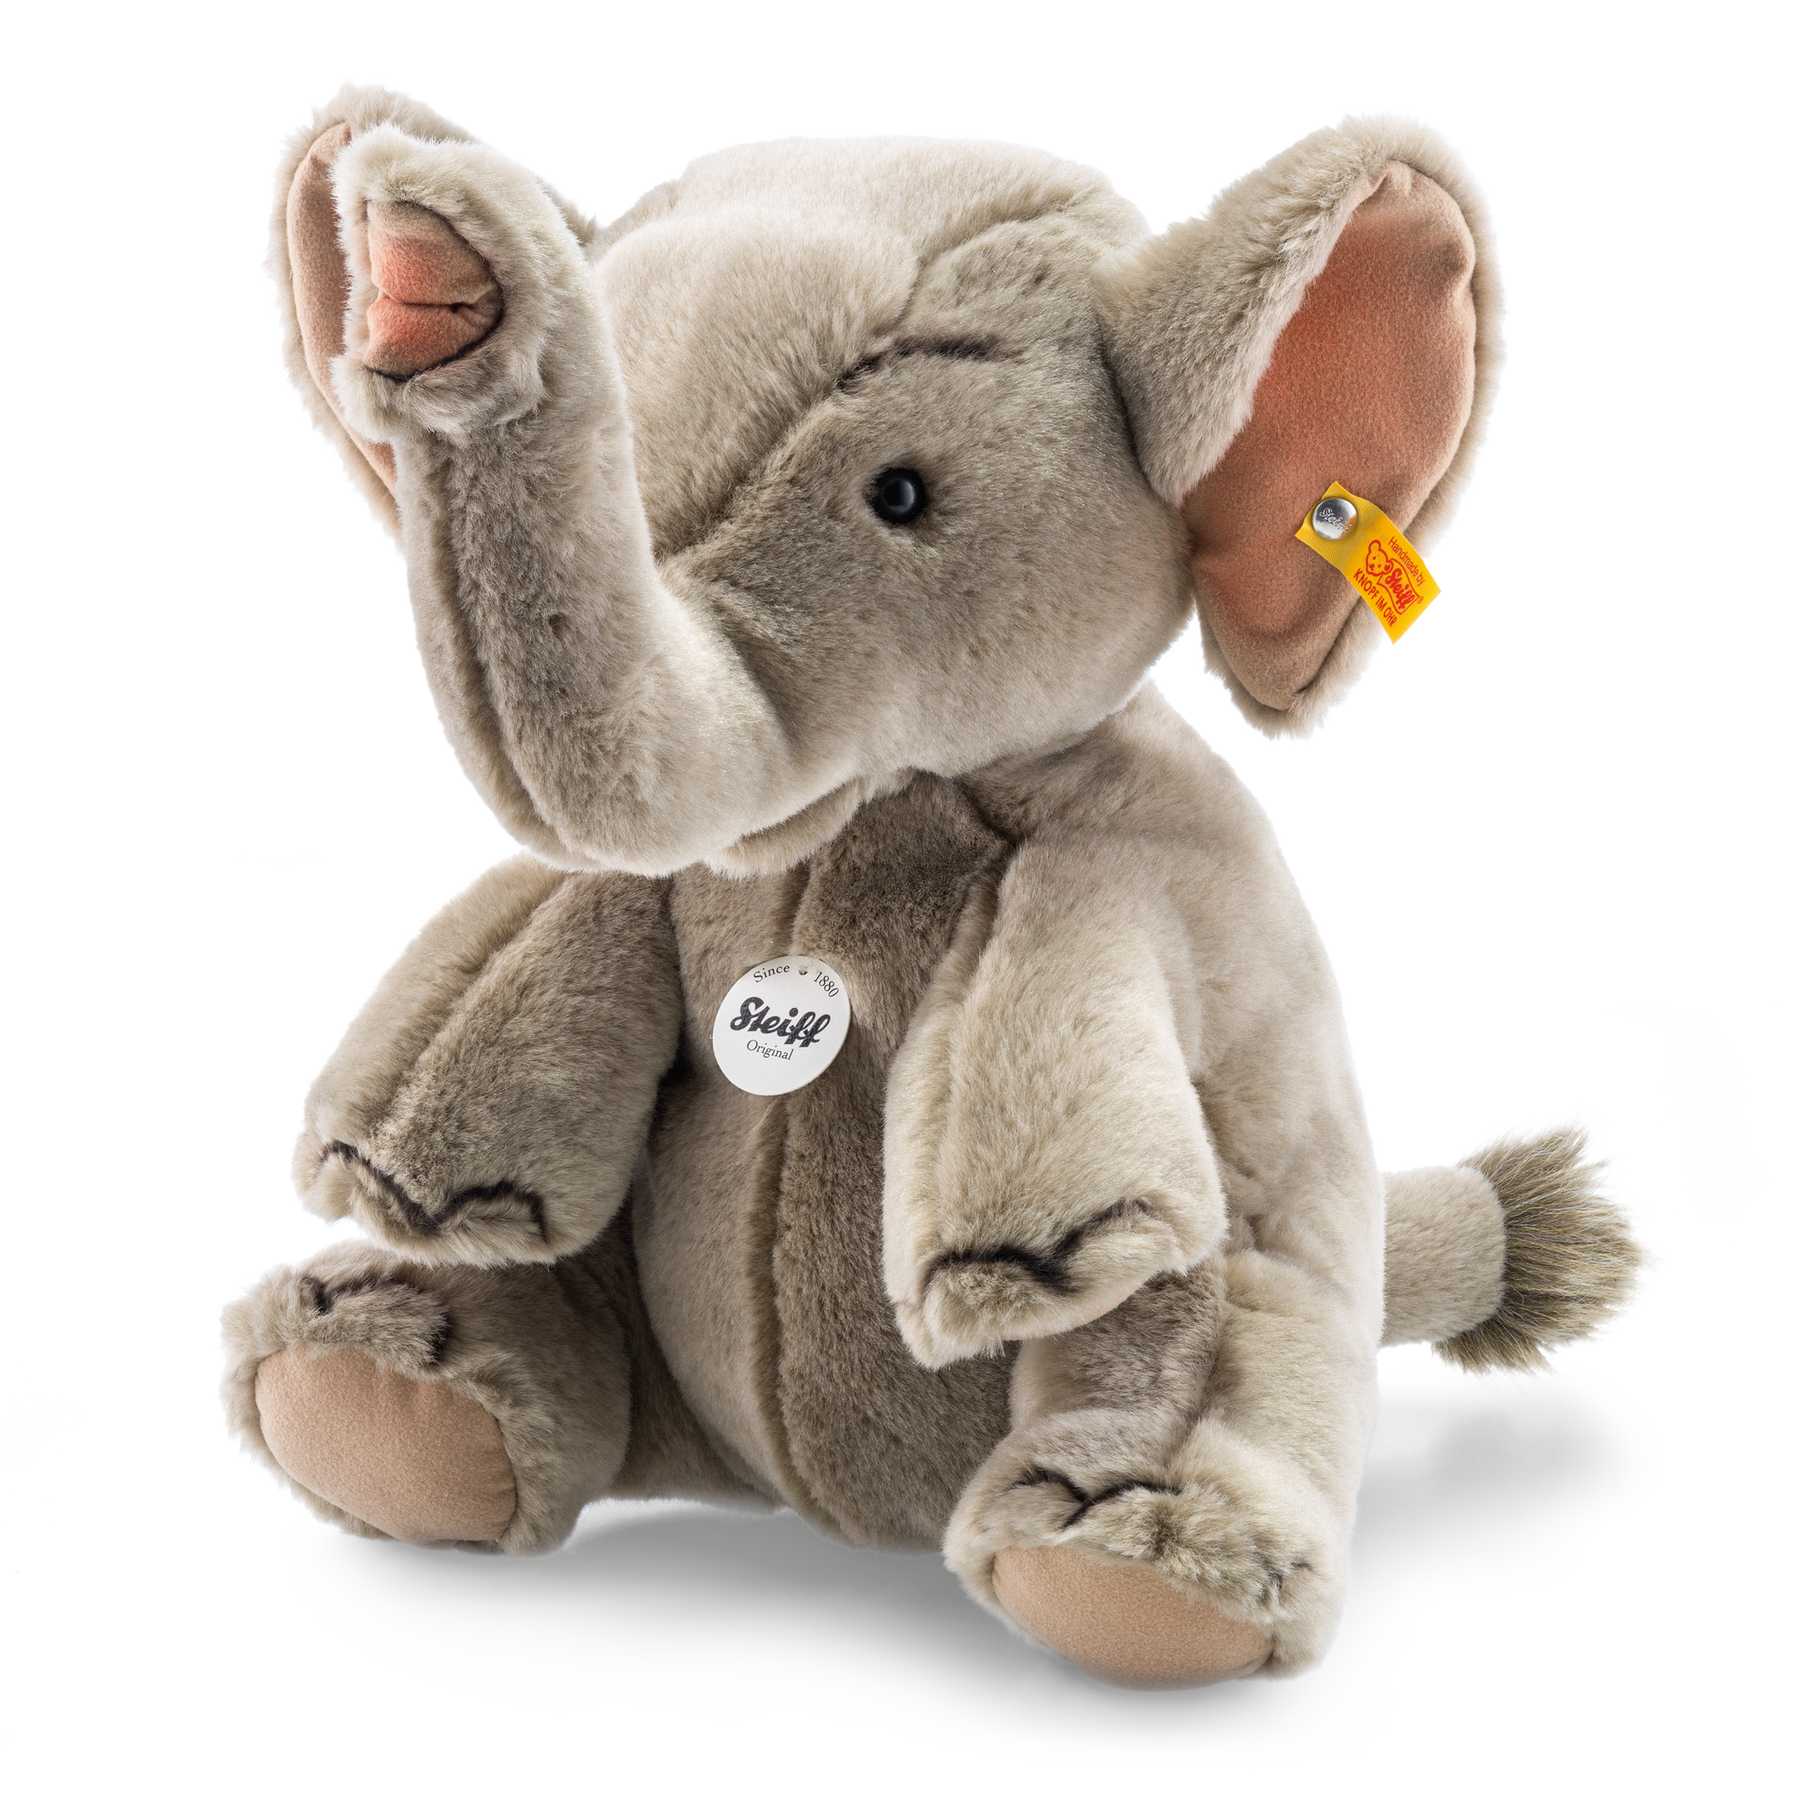 Hubert elephant